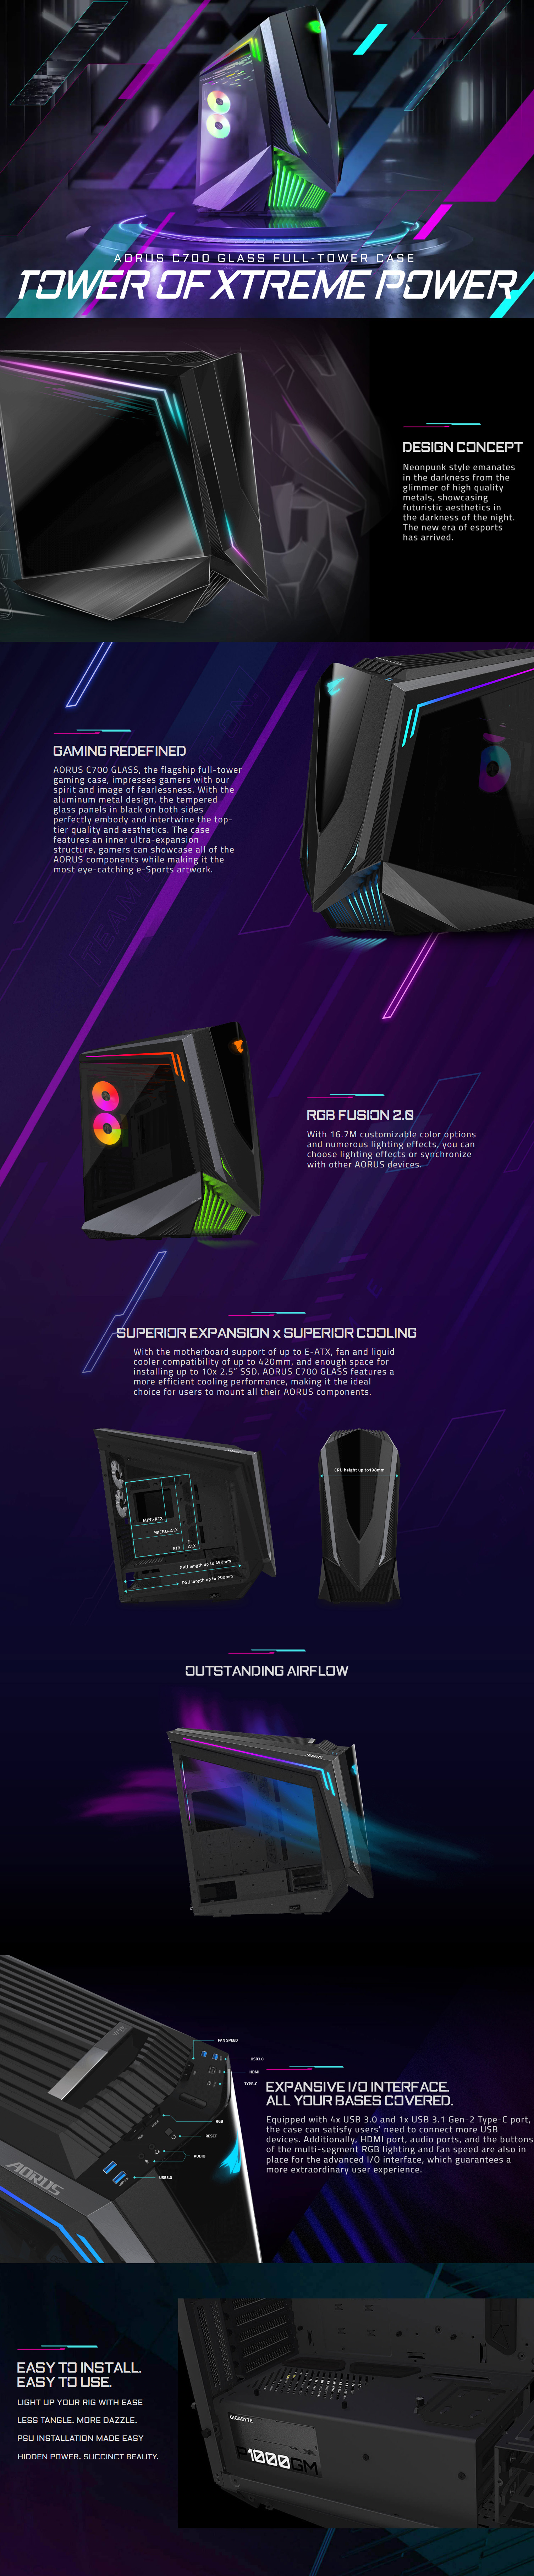 Gigabyte-Cases-Gigabyte-Aorus-C700-Glass-Full-Tower-ATX-PC-Gaming-Case-1